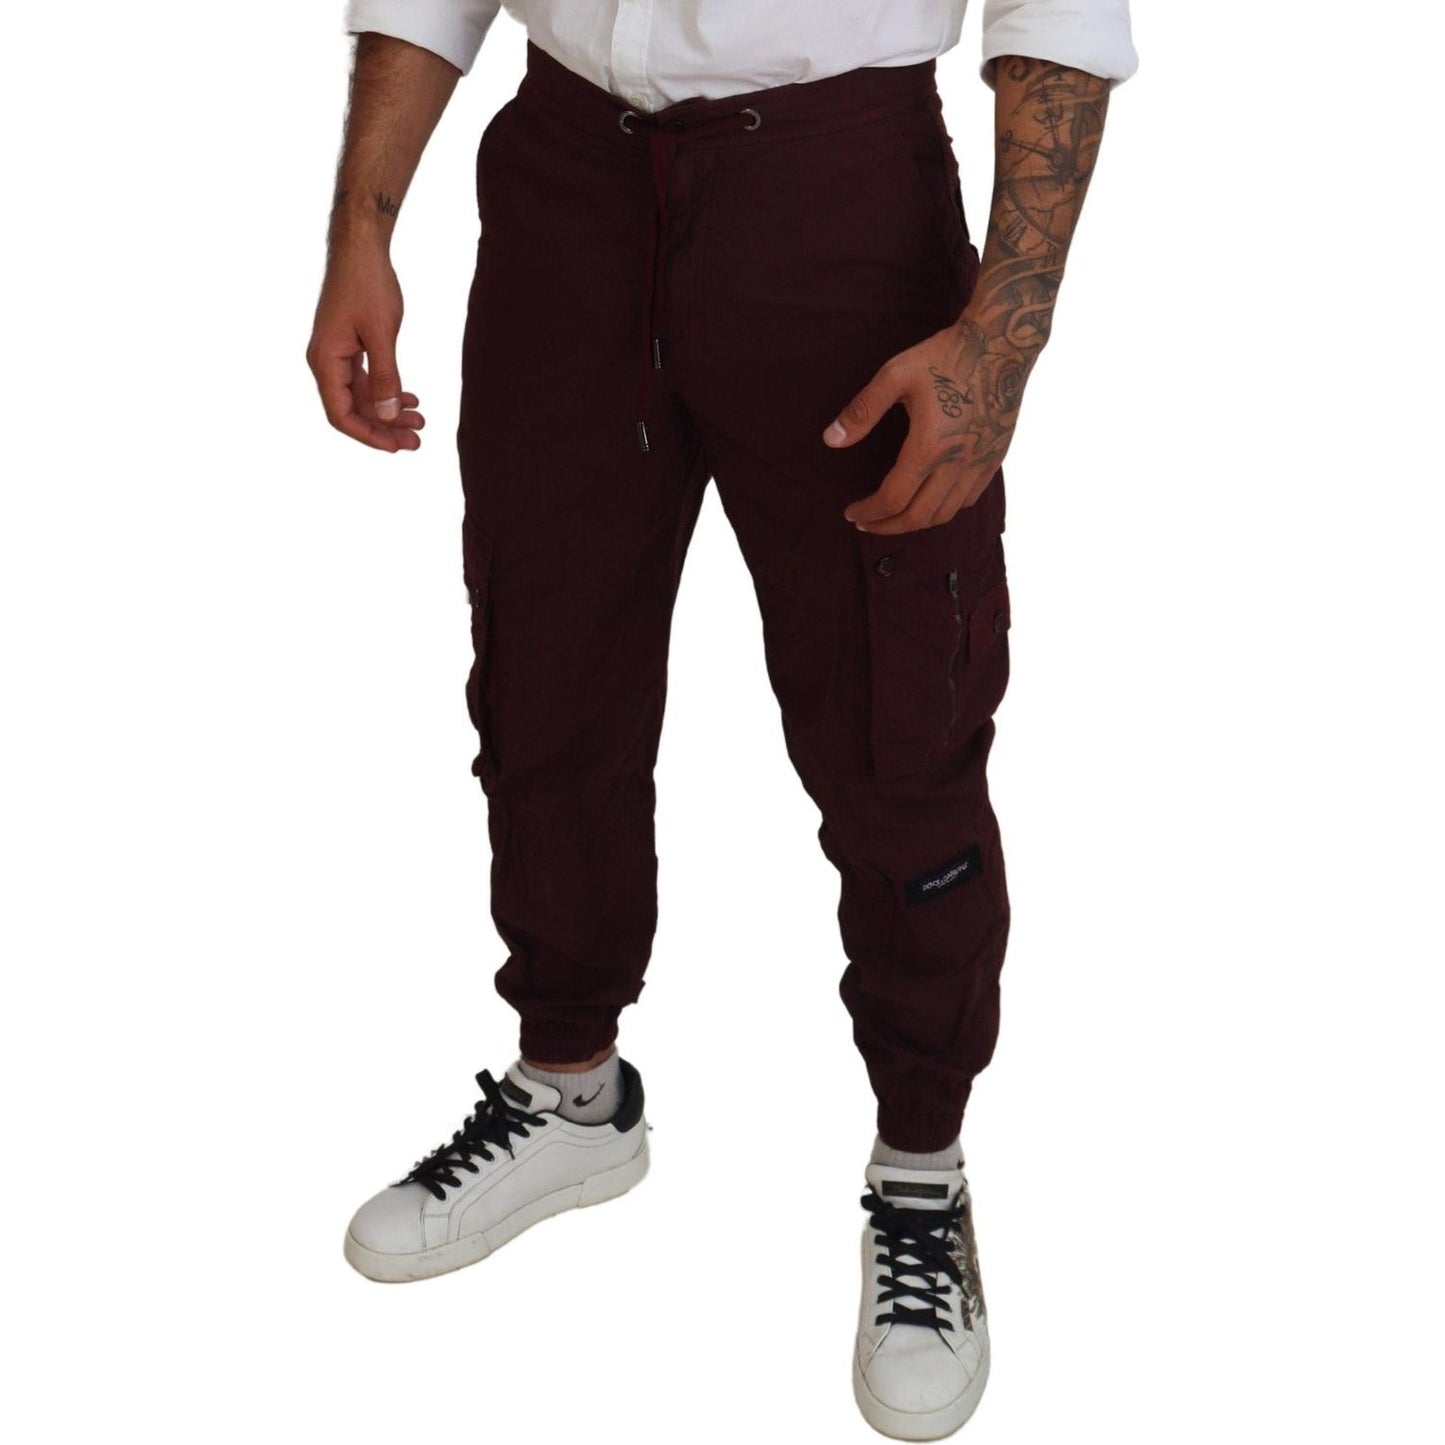 Dolce & Gabbana Elegant Burgundy Cotton Jogger Pants bordeaux-cotton-cargo-jogger-sweatpants-pants